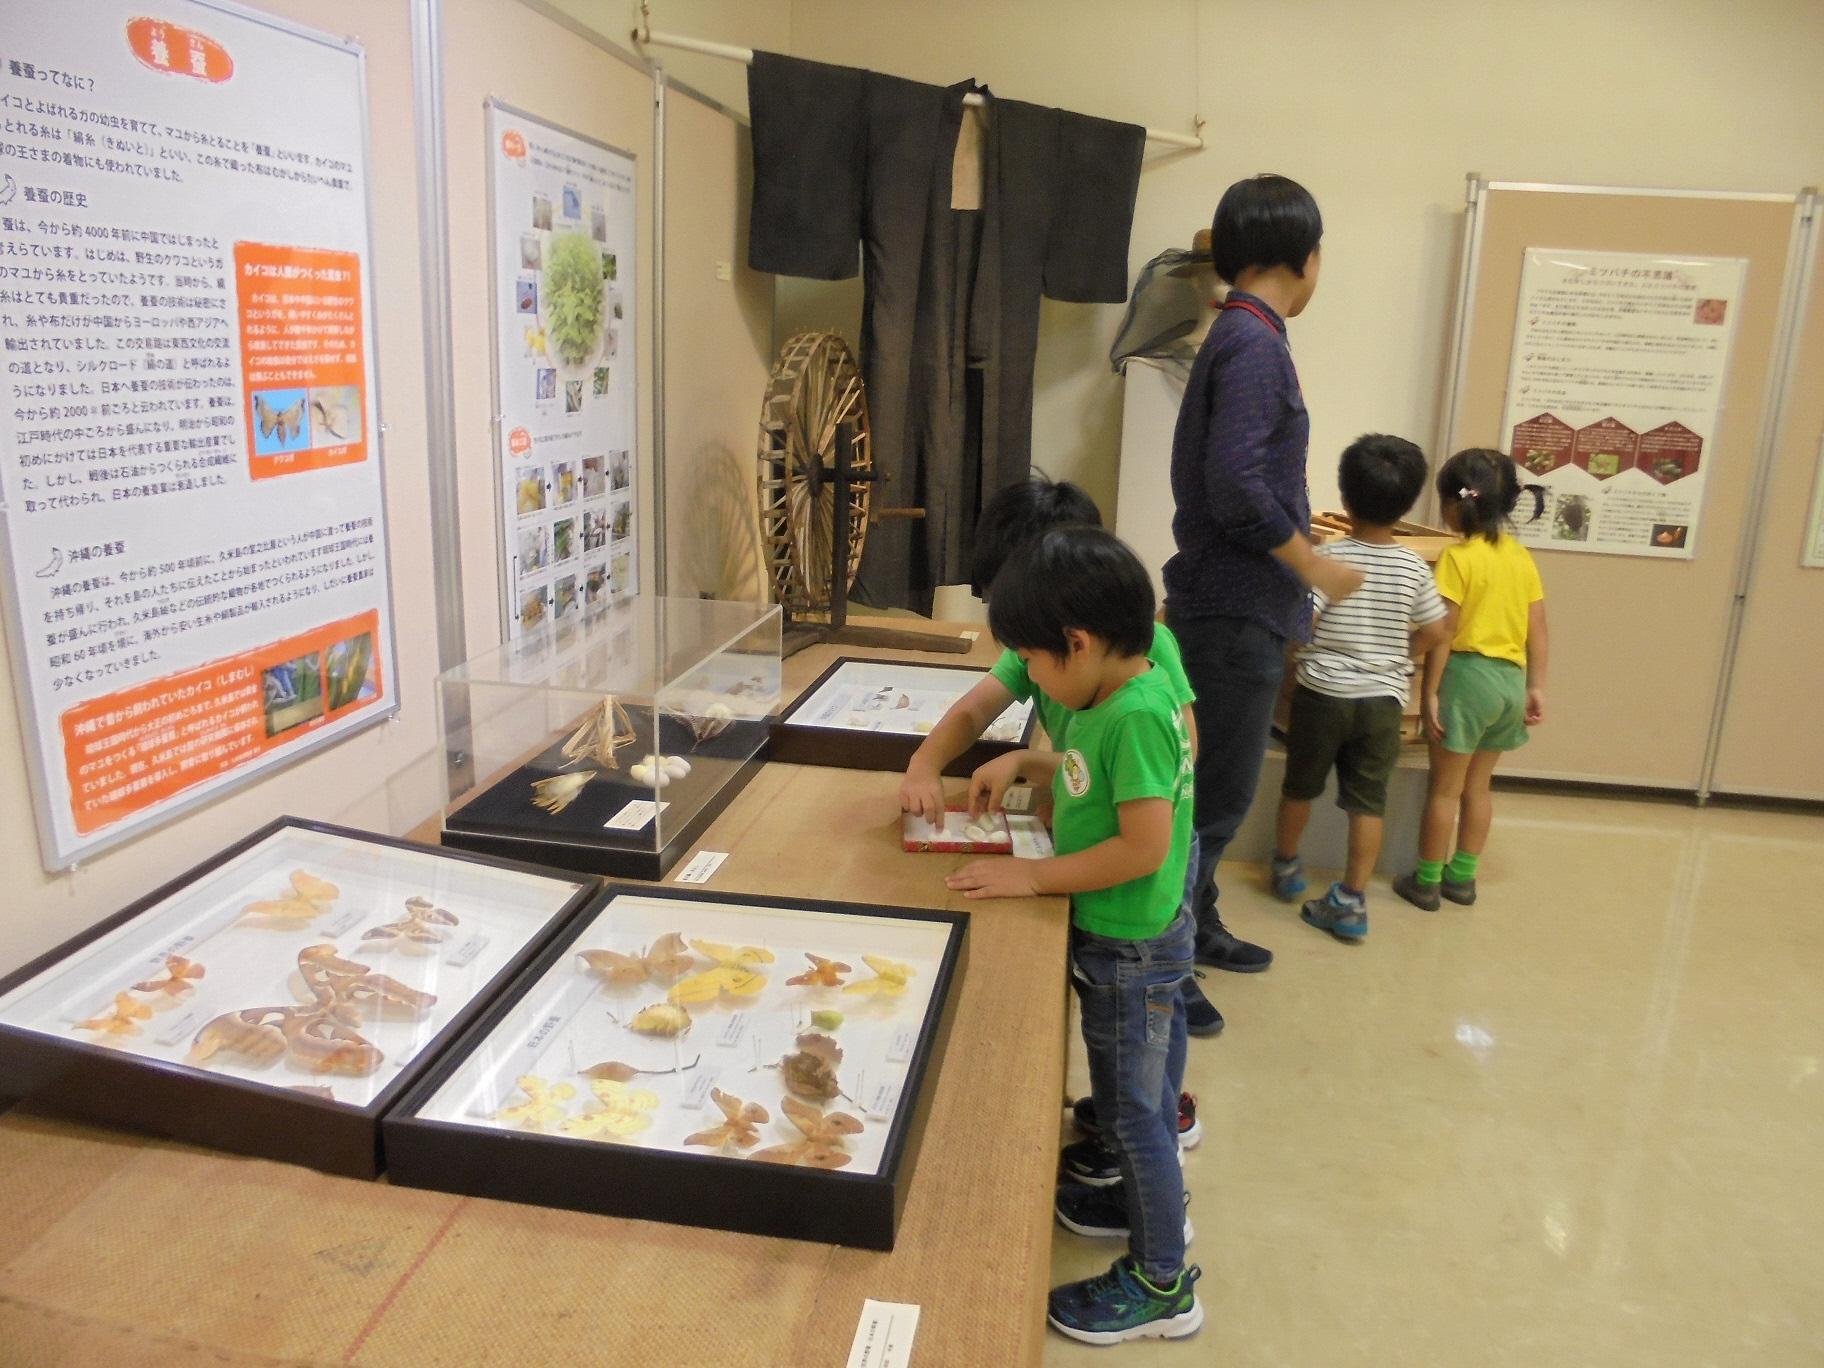 小さな子供たちが標本や展示物を興味深そうに見ている写真